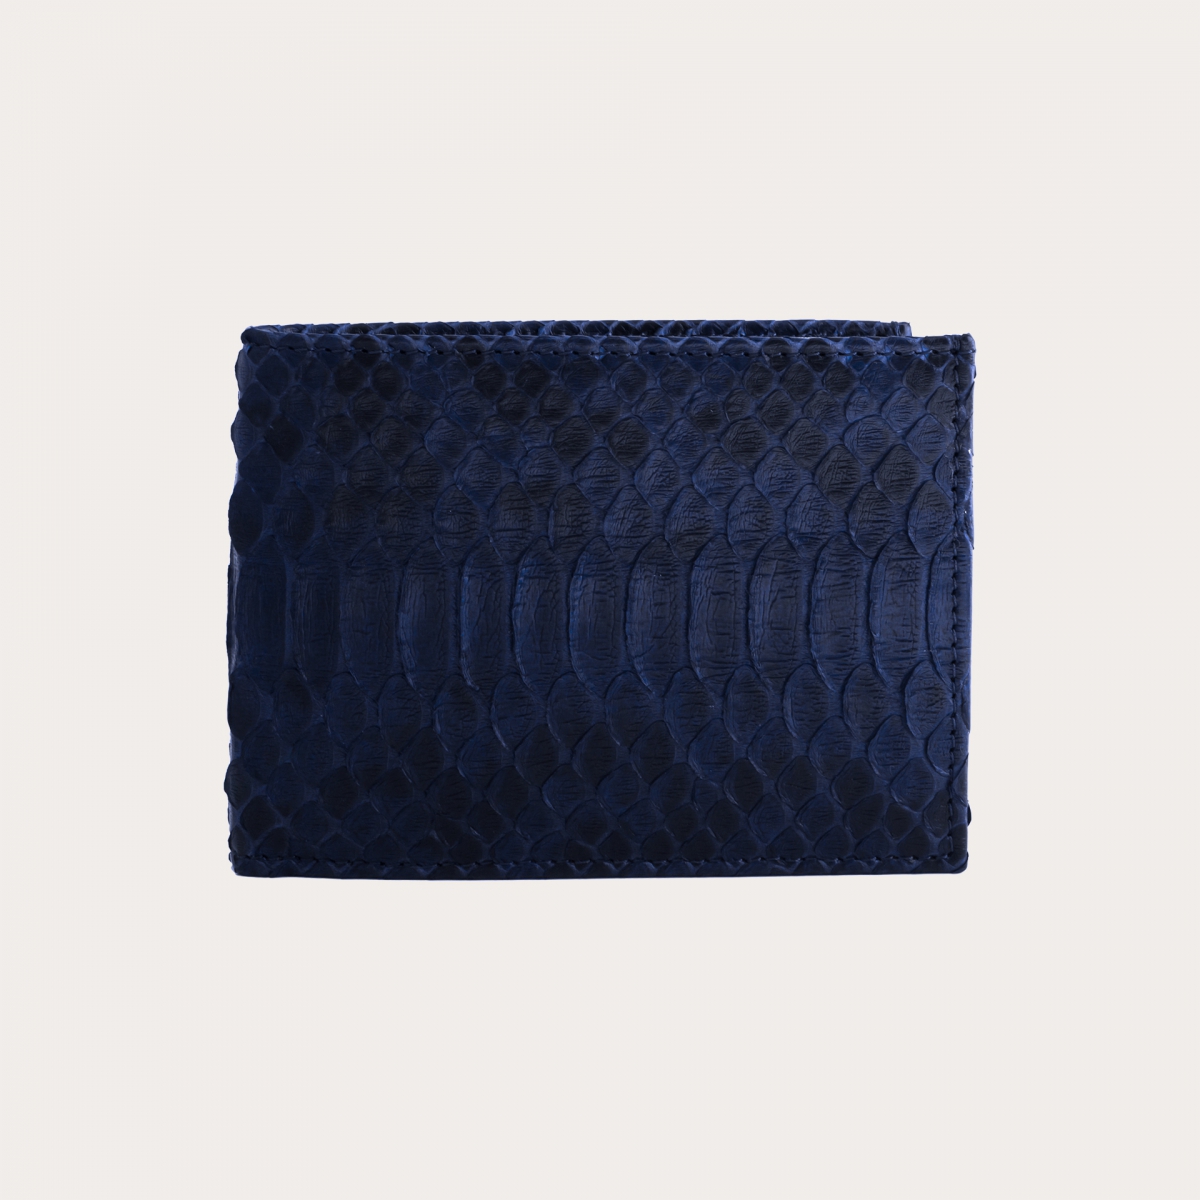 Herren python Brieftasche mit Münzfach, blau